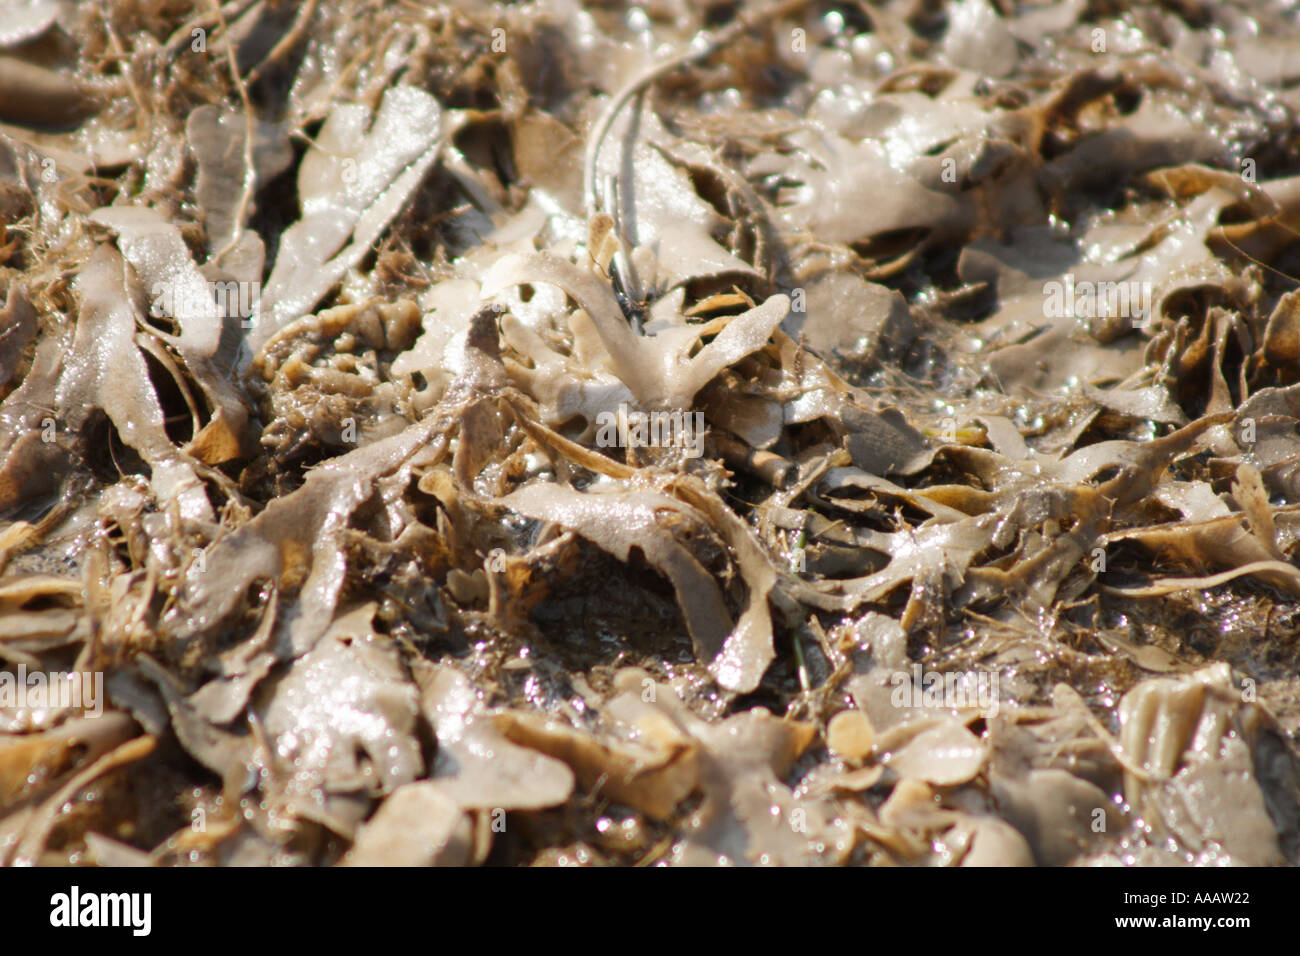 Dulse seaweed washed up on shore, Palmaria palmata, UK Stock Photo